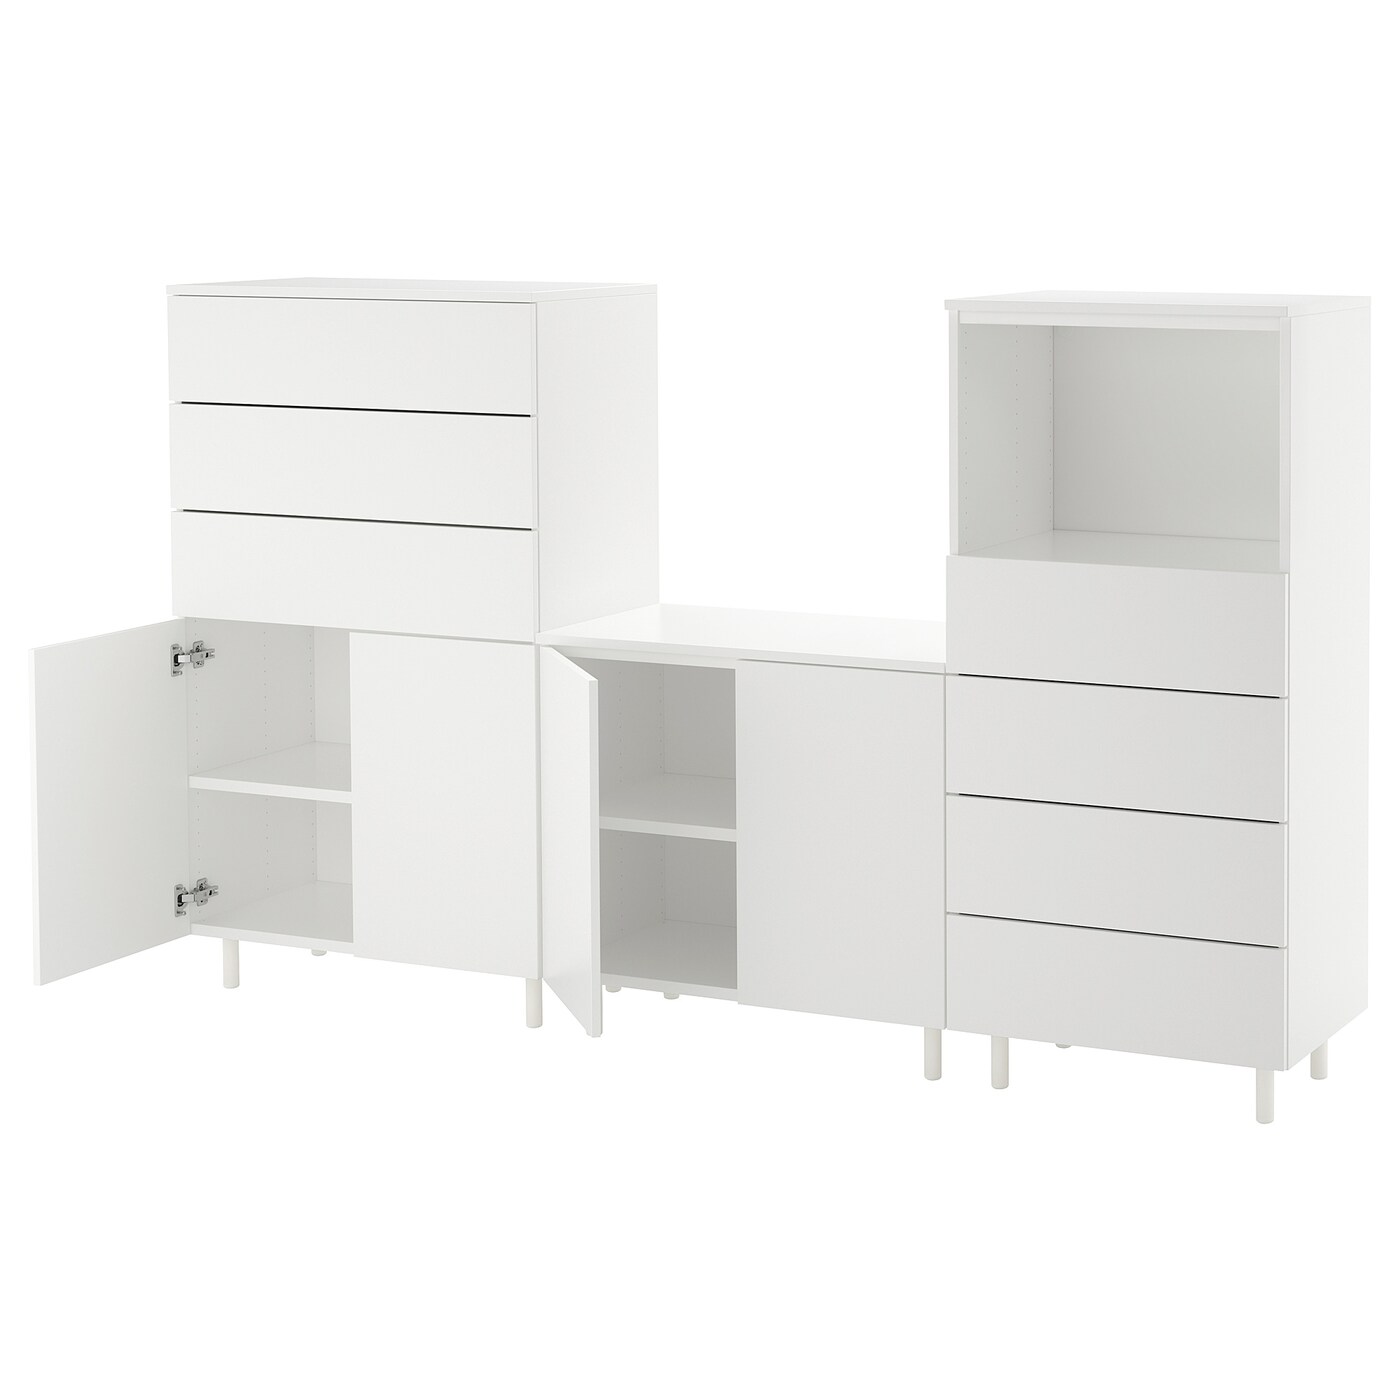 Книжный шкаф - PLATSA IKEA / ПЛАТСА ИКЕА,  220х133 см, белый